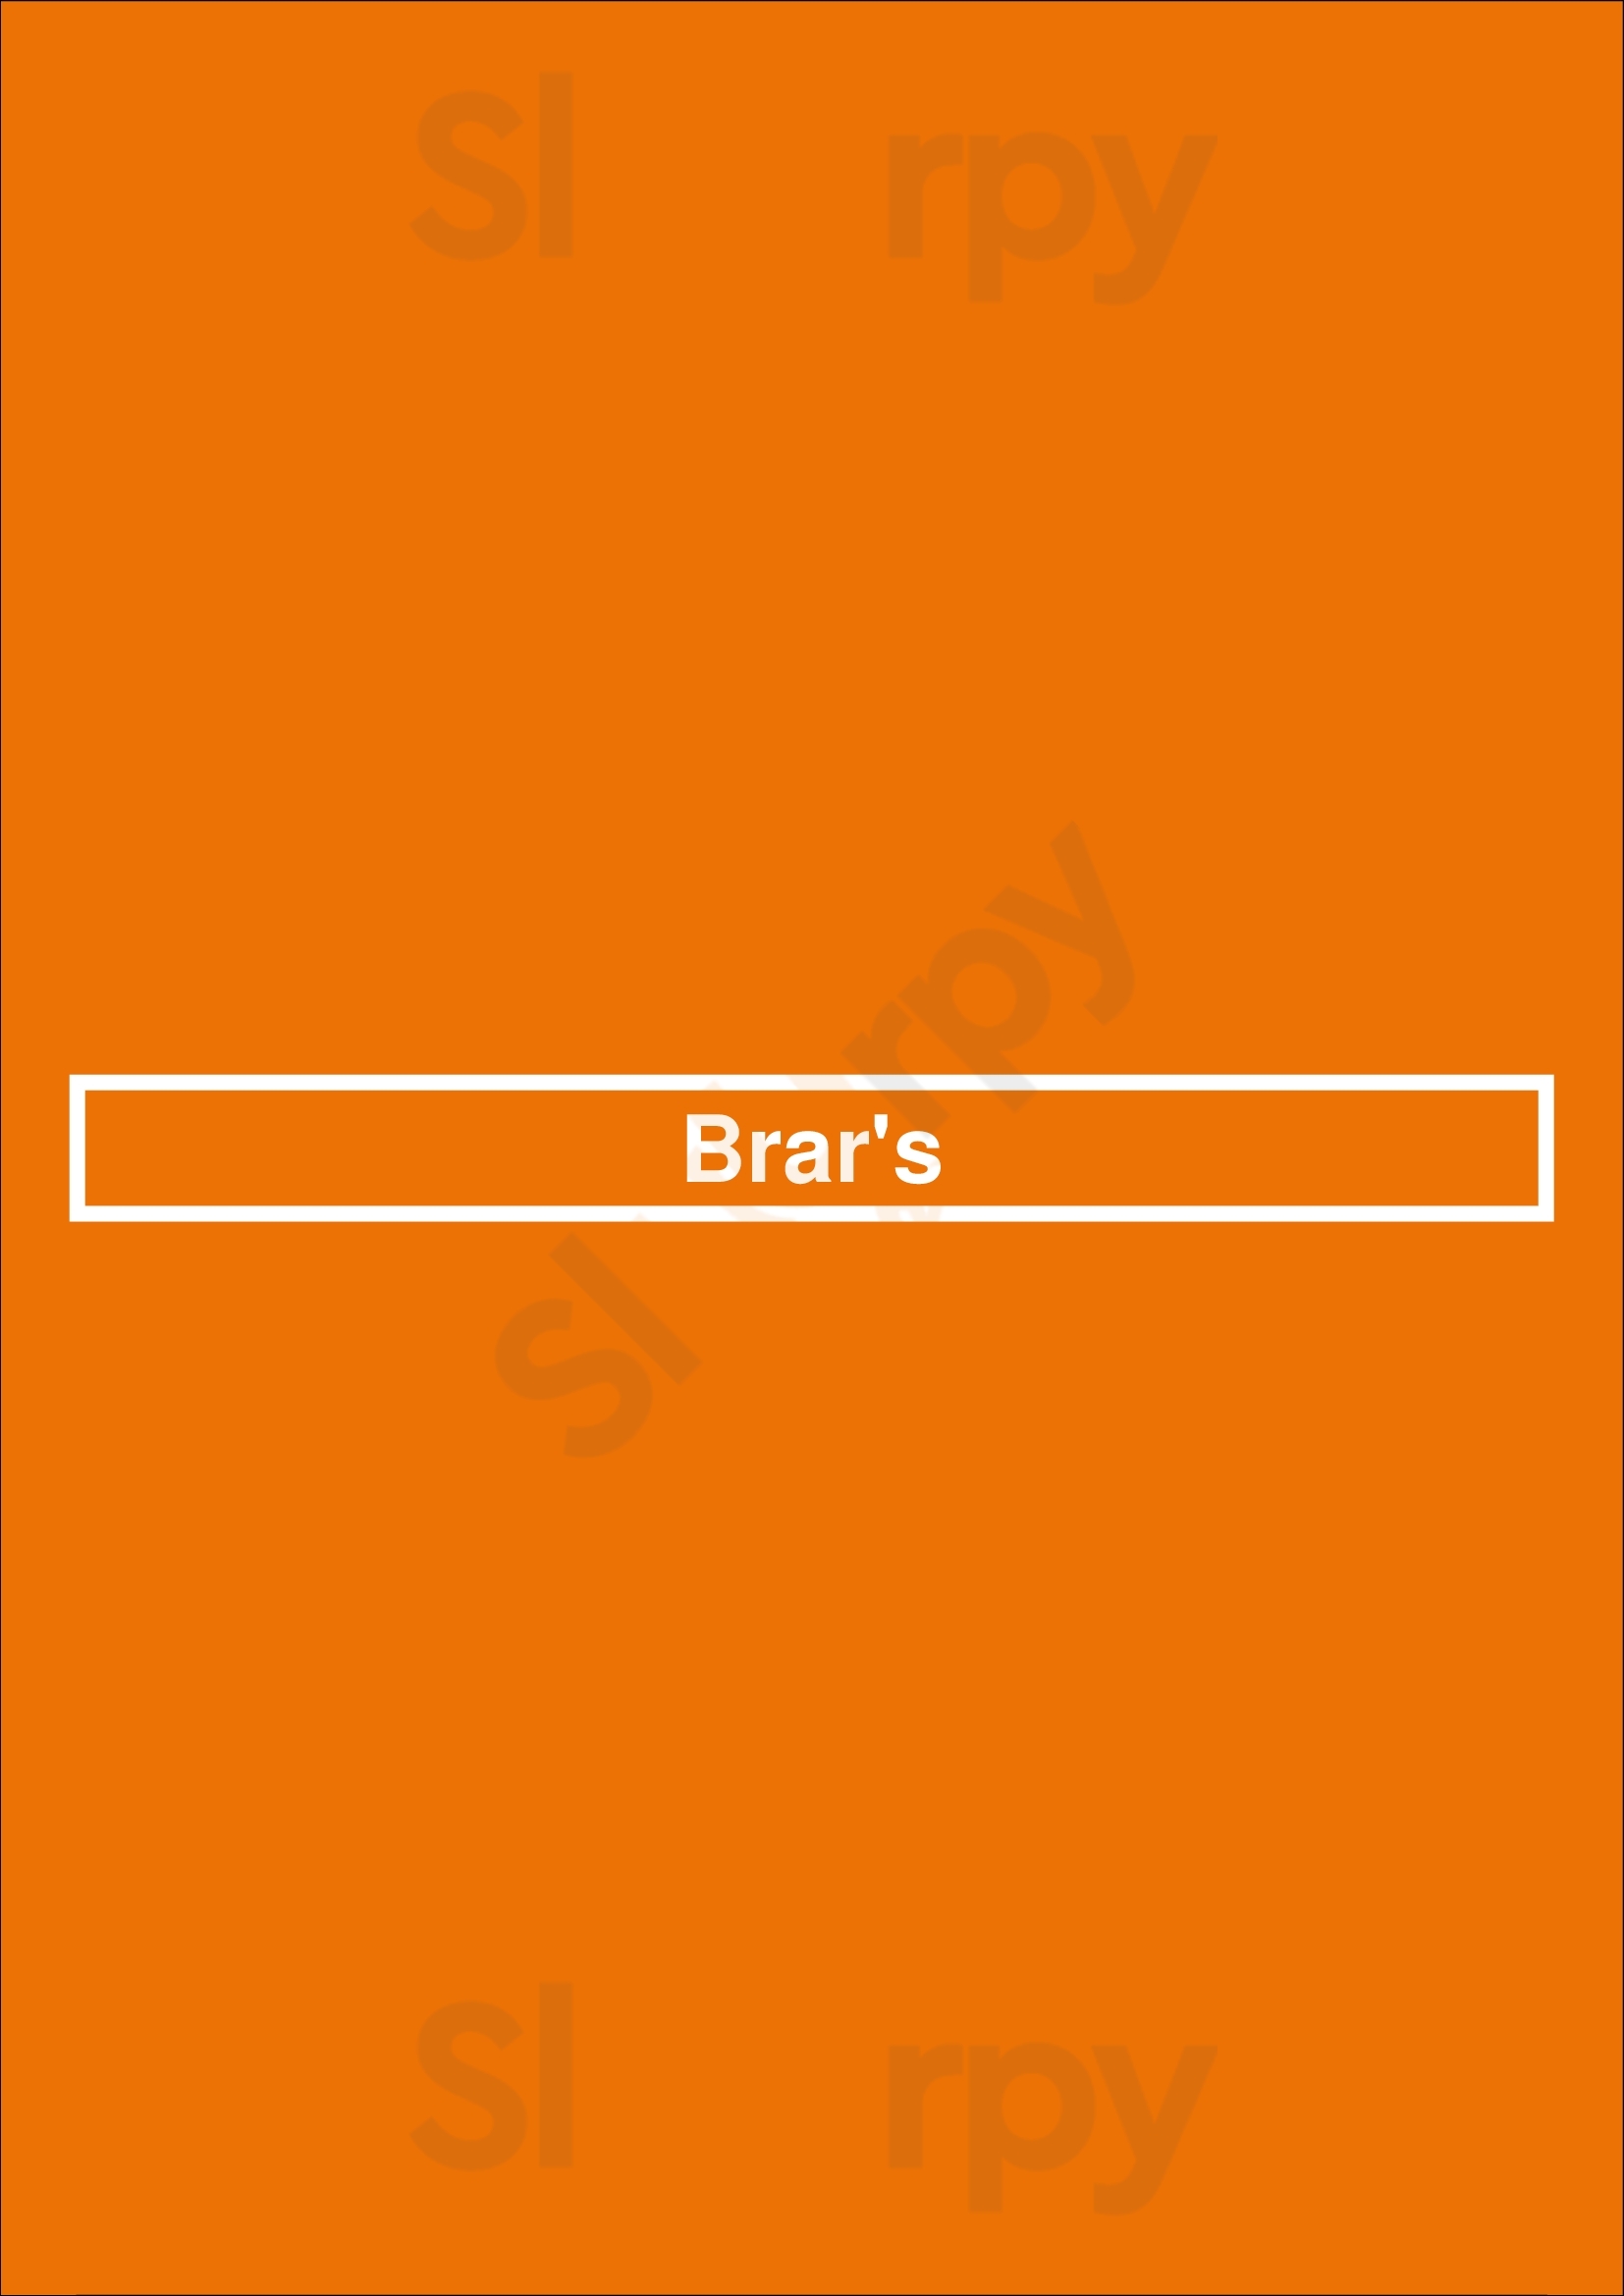 Brar's Brampton Menu - 1